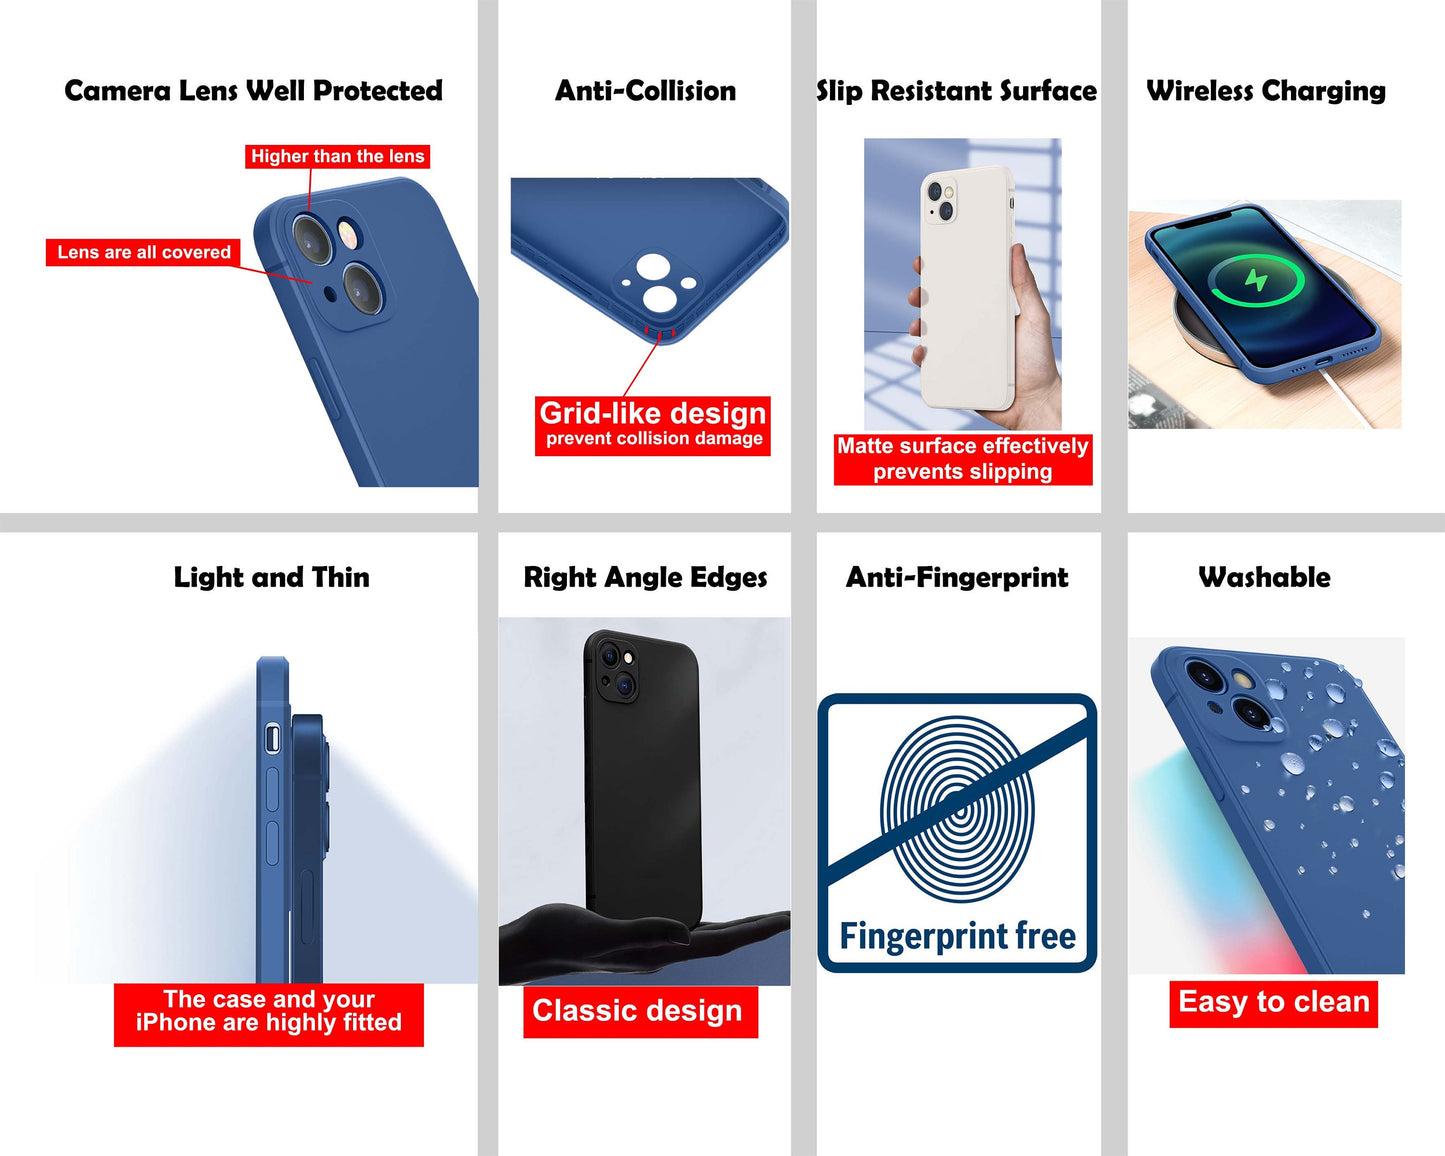 Vincent Van Gogh Iphone 14 Case, Iphone 13, Iphone Cases, Iphone 8 Plus Case Art, Designer Iphone Case, Protective Case, Silicone Case